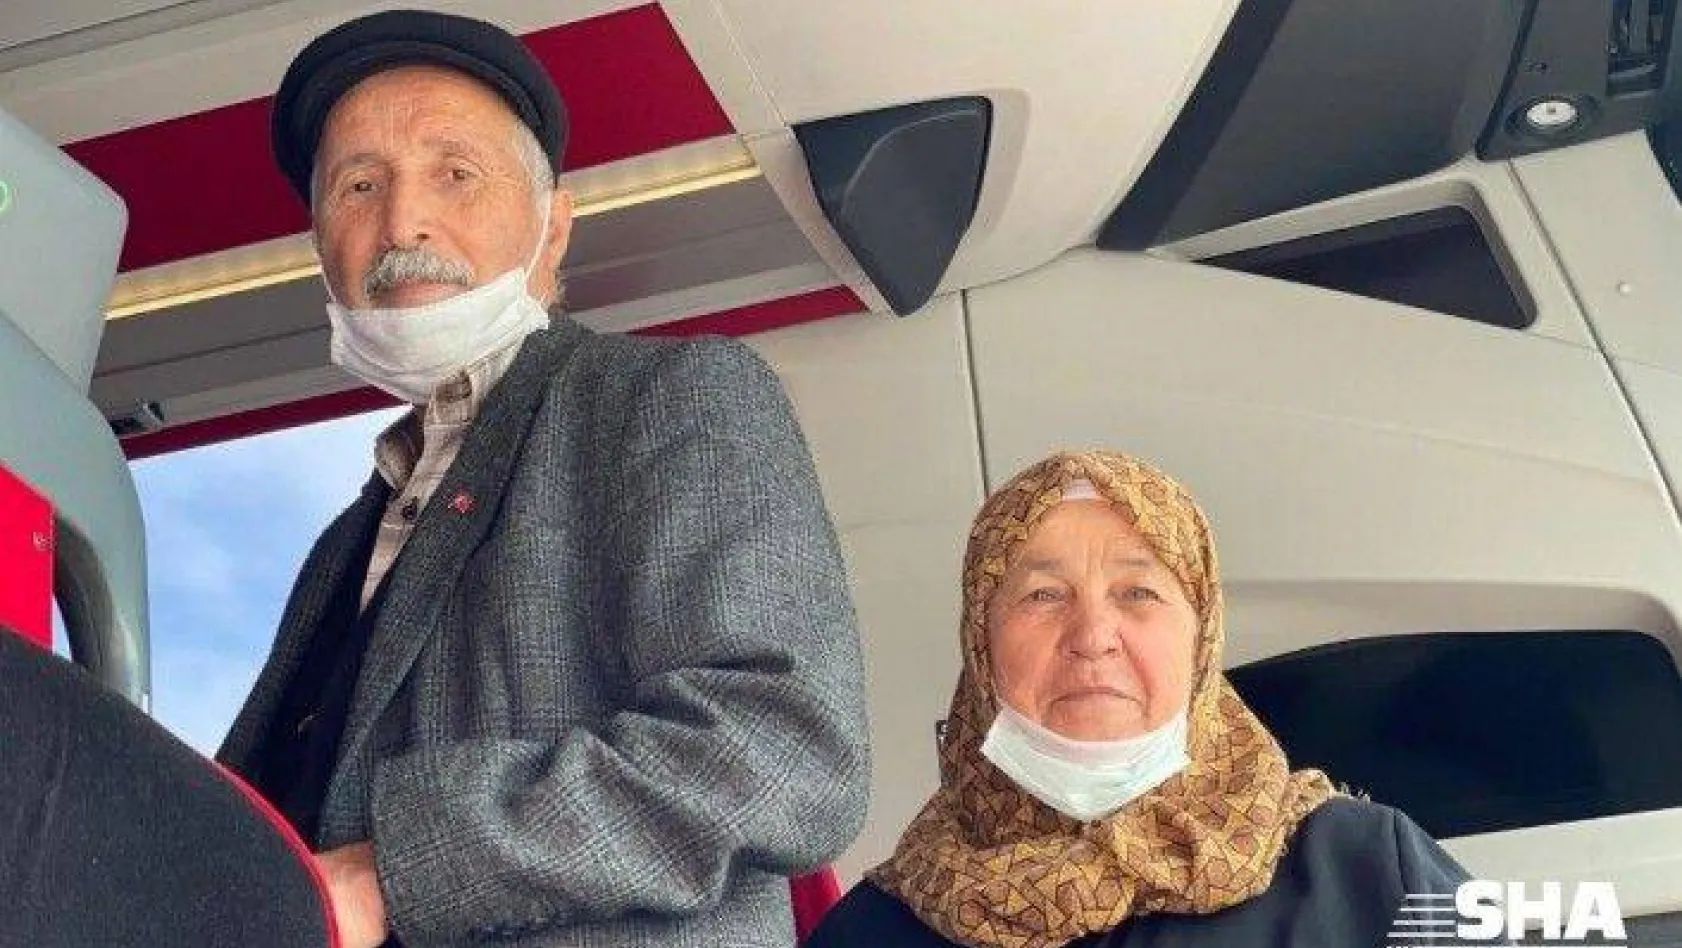 Seyahat izin belgesi alan 65 yaş ve üzeri vatandaşlar yollara düştü